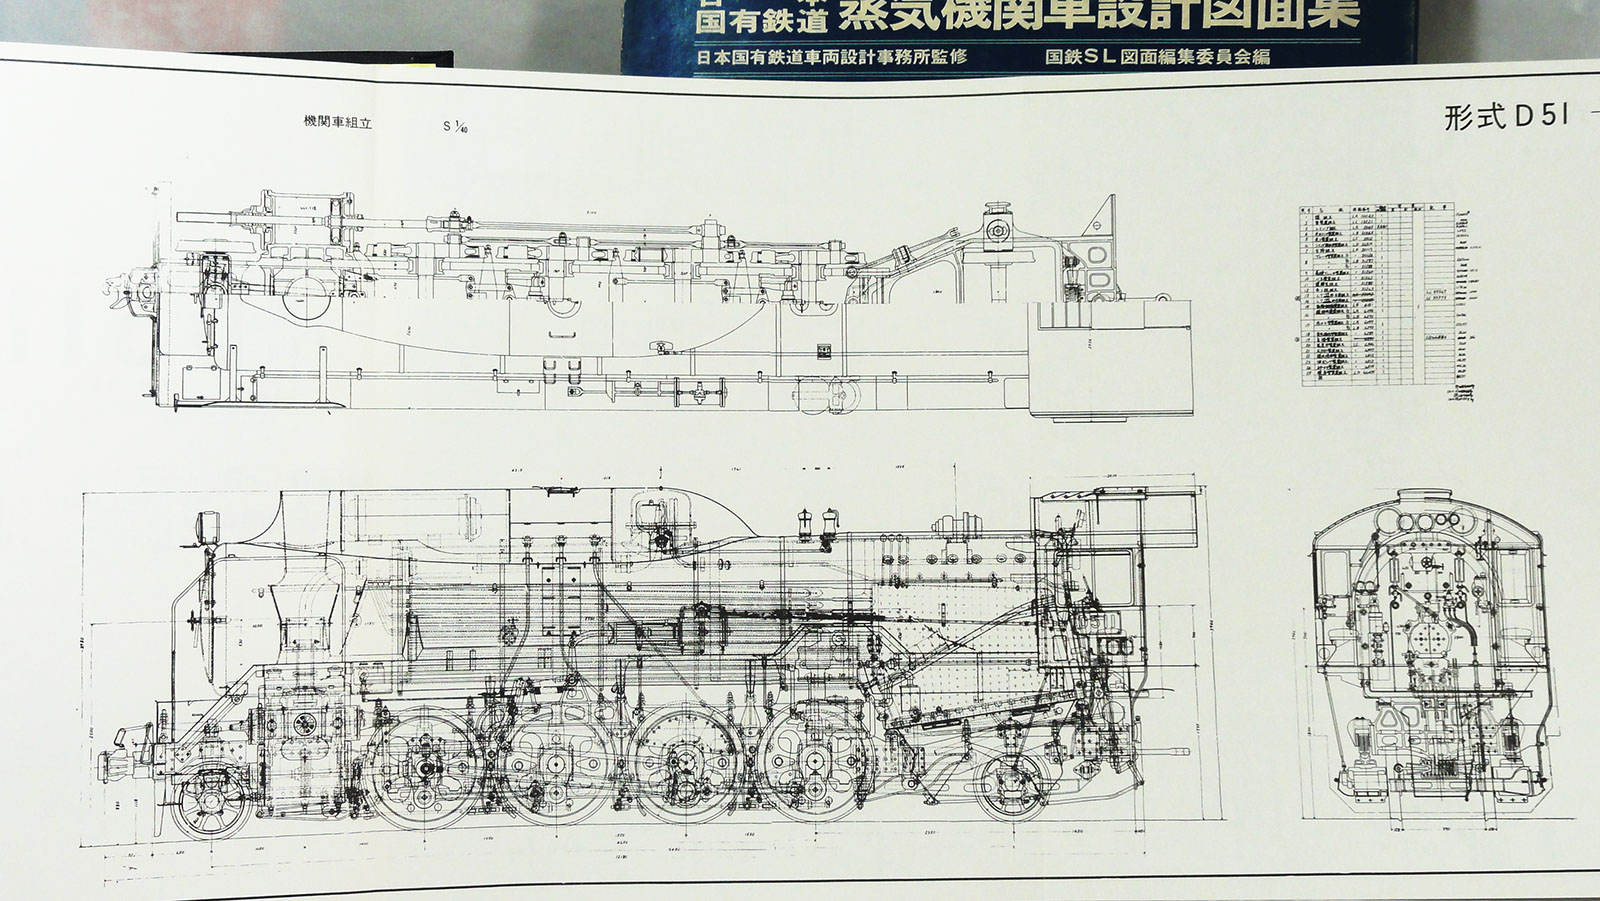 日本国有鉄道 日本蒸気機関車設計図面集 a 定番 www.urbanbug.net